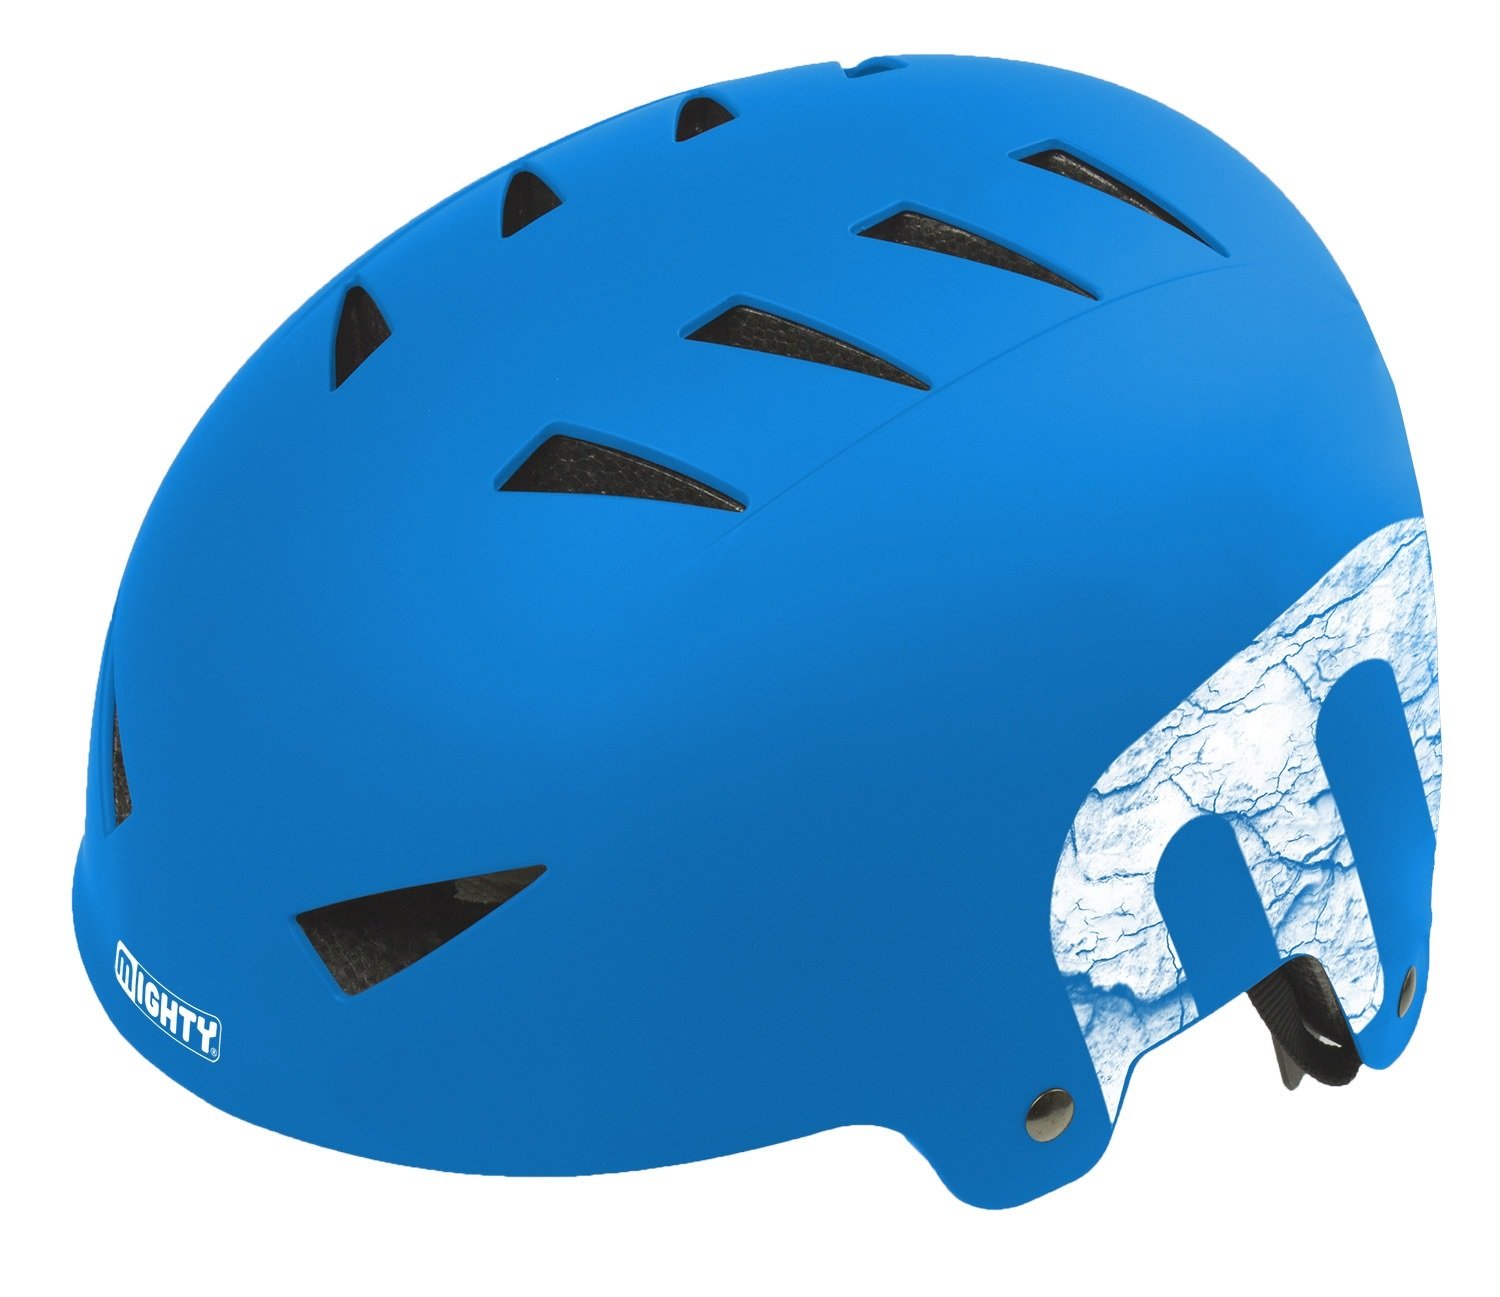 Шлем велосипедный MIGHTY X-STYLE, 14 отверстий, ABS-суперпрочный, 60-63см, матово-синий, 5-731227 шлем велосипедный mighty x style 60 63см 14 отверстий авs прочность красный матовый 5 731225